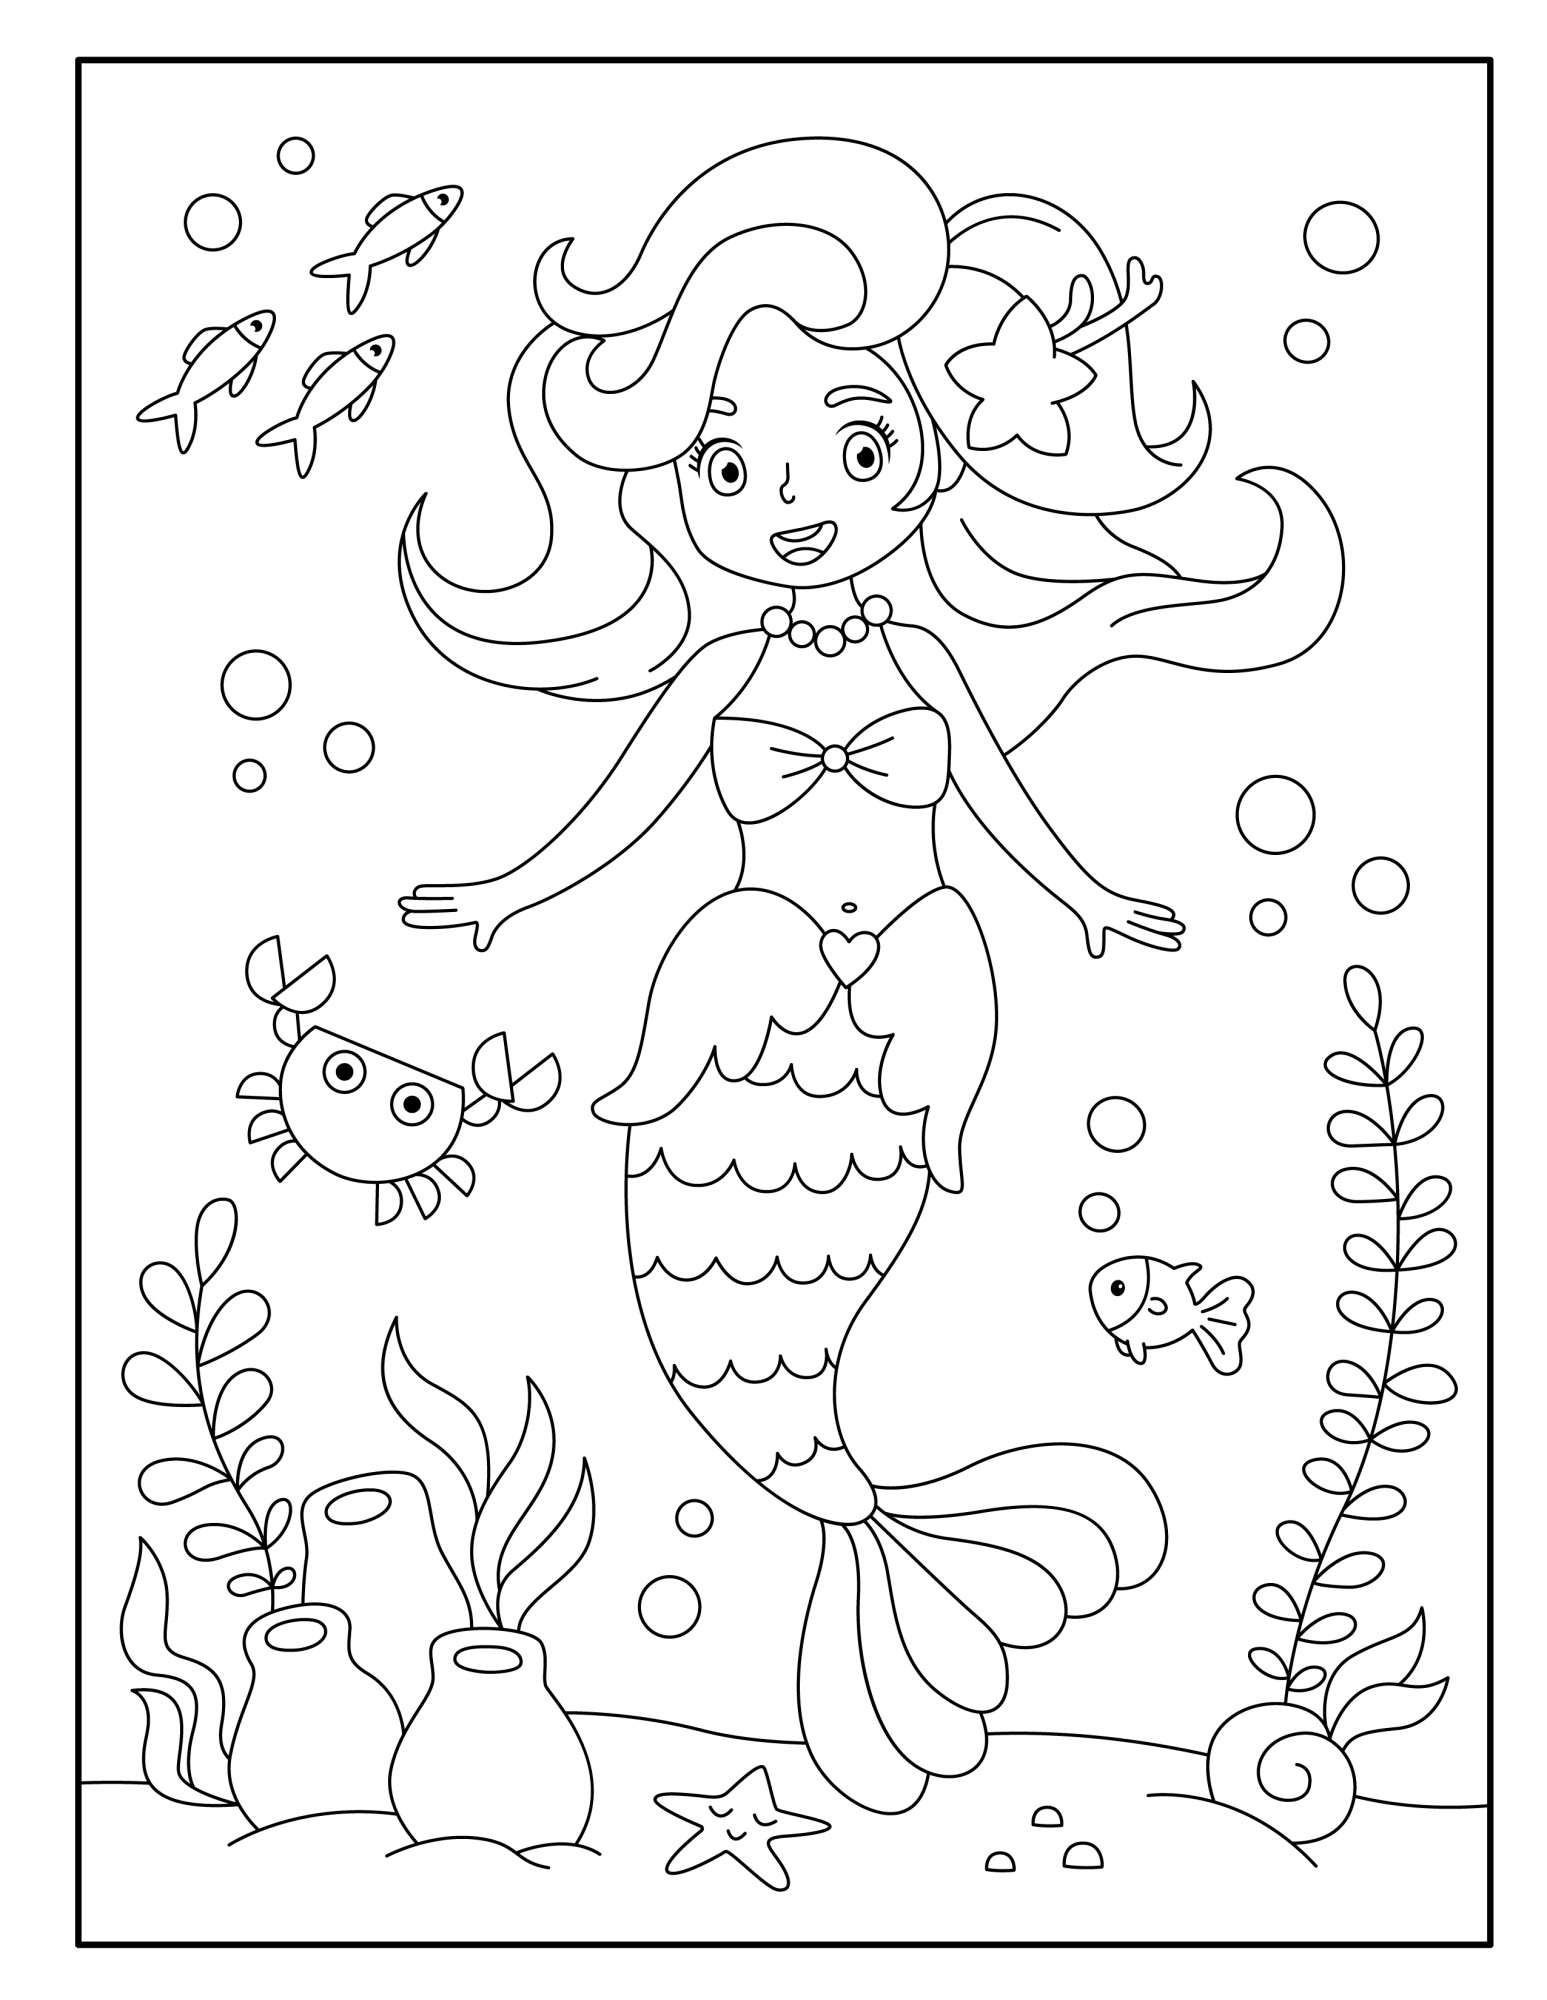 Раскраска для детей: игры с русалкой в пенных волнах